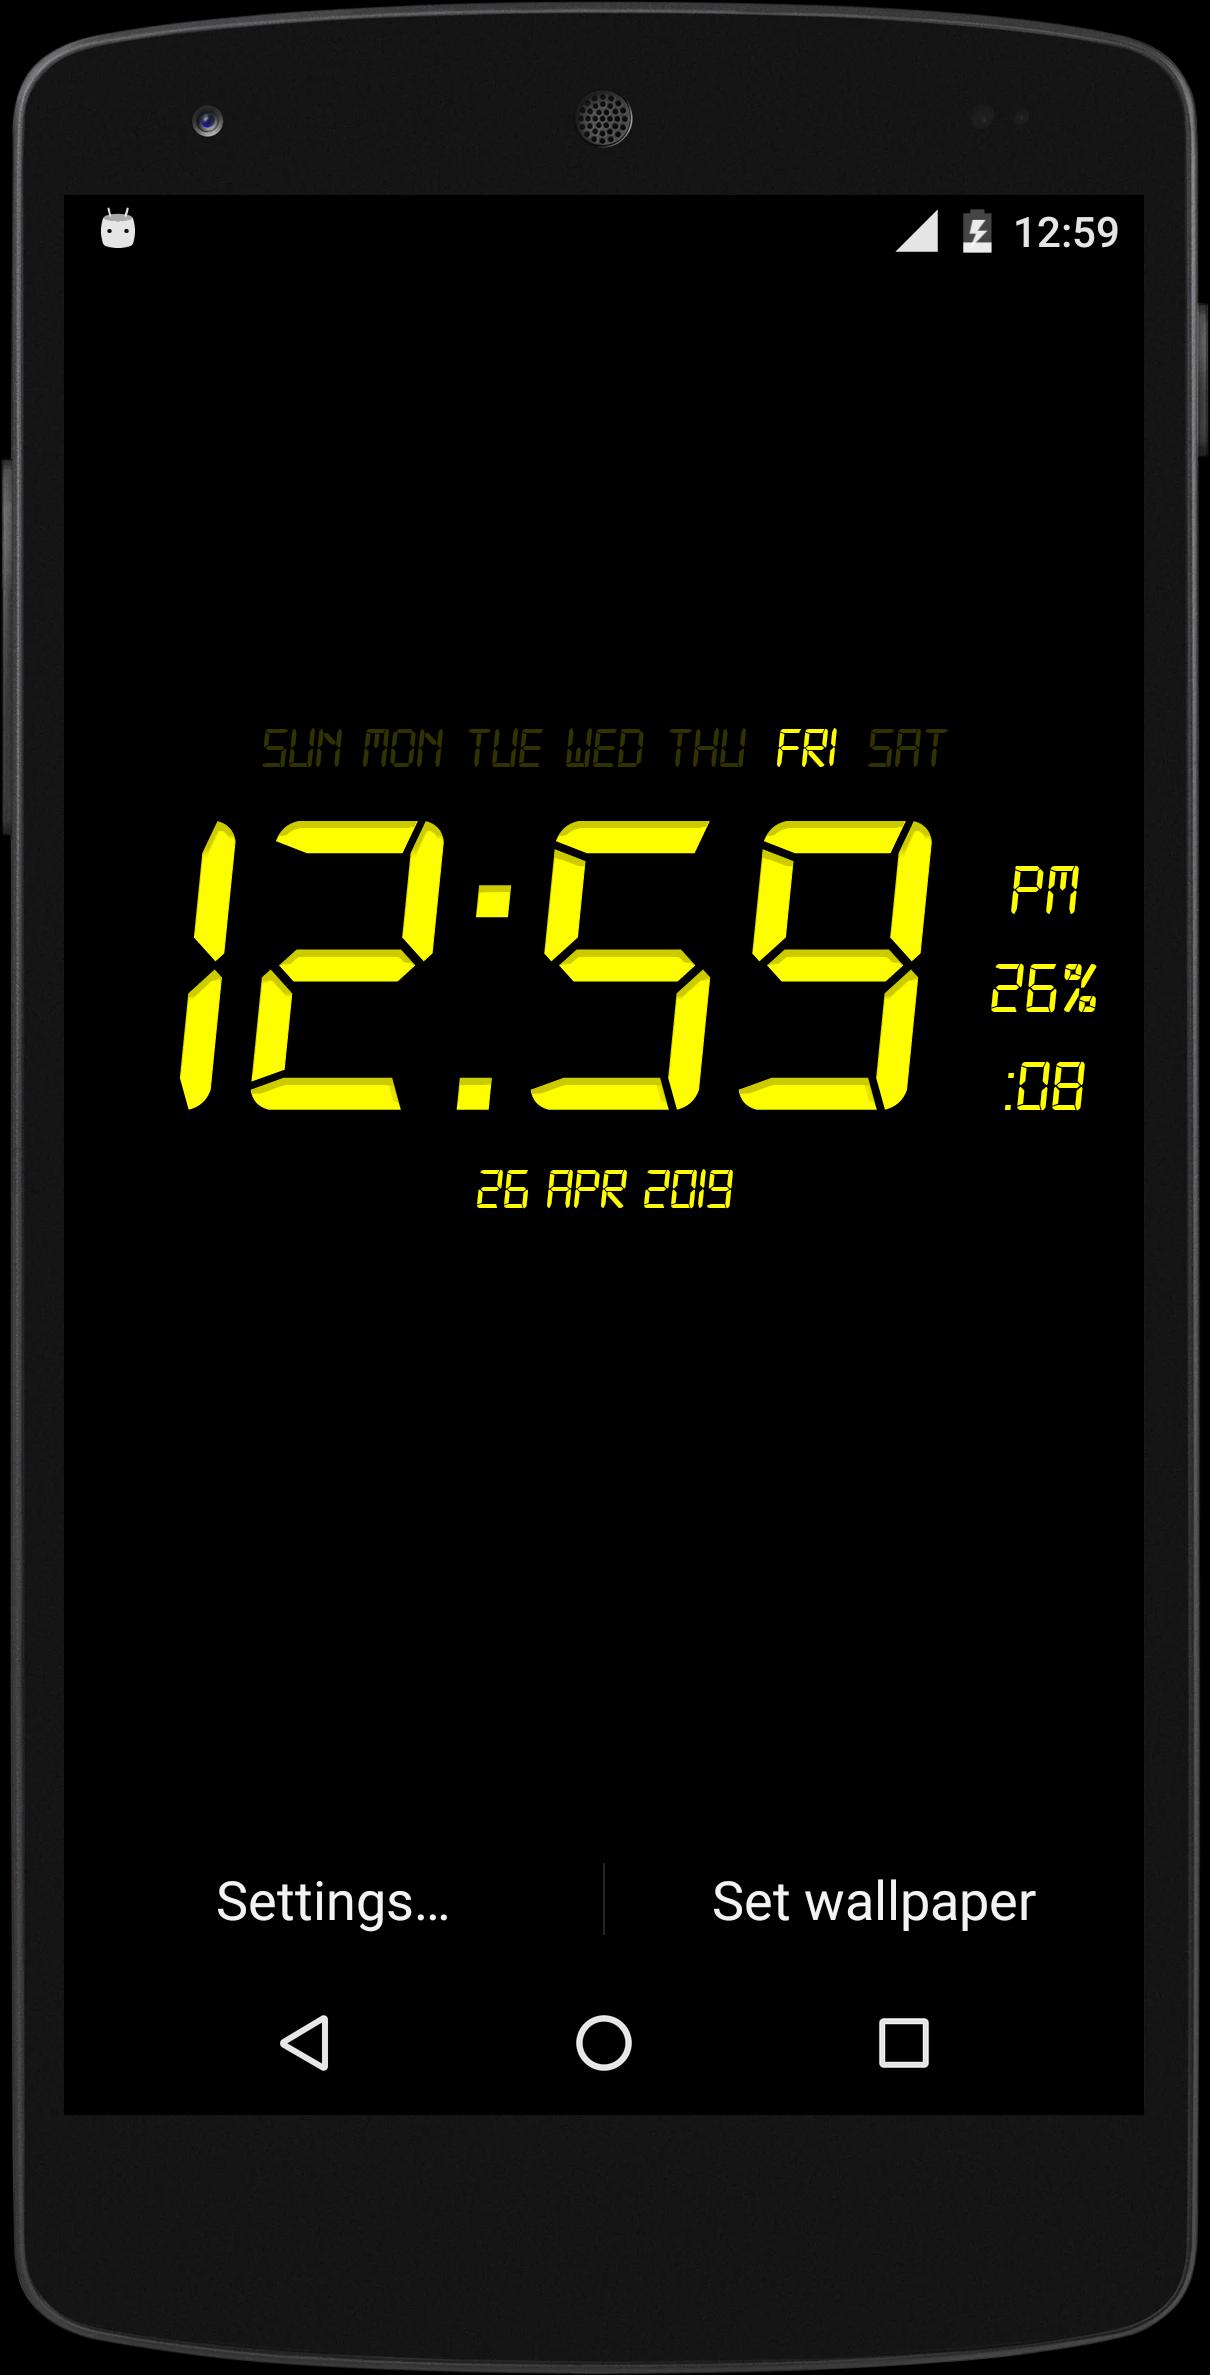 Android 用の デジタル時計ライブ壁紙 Apk をダウンロード